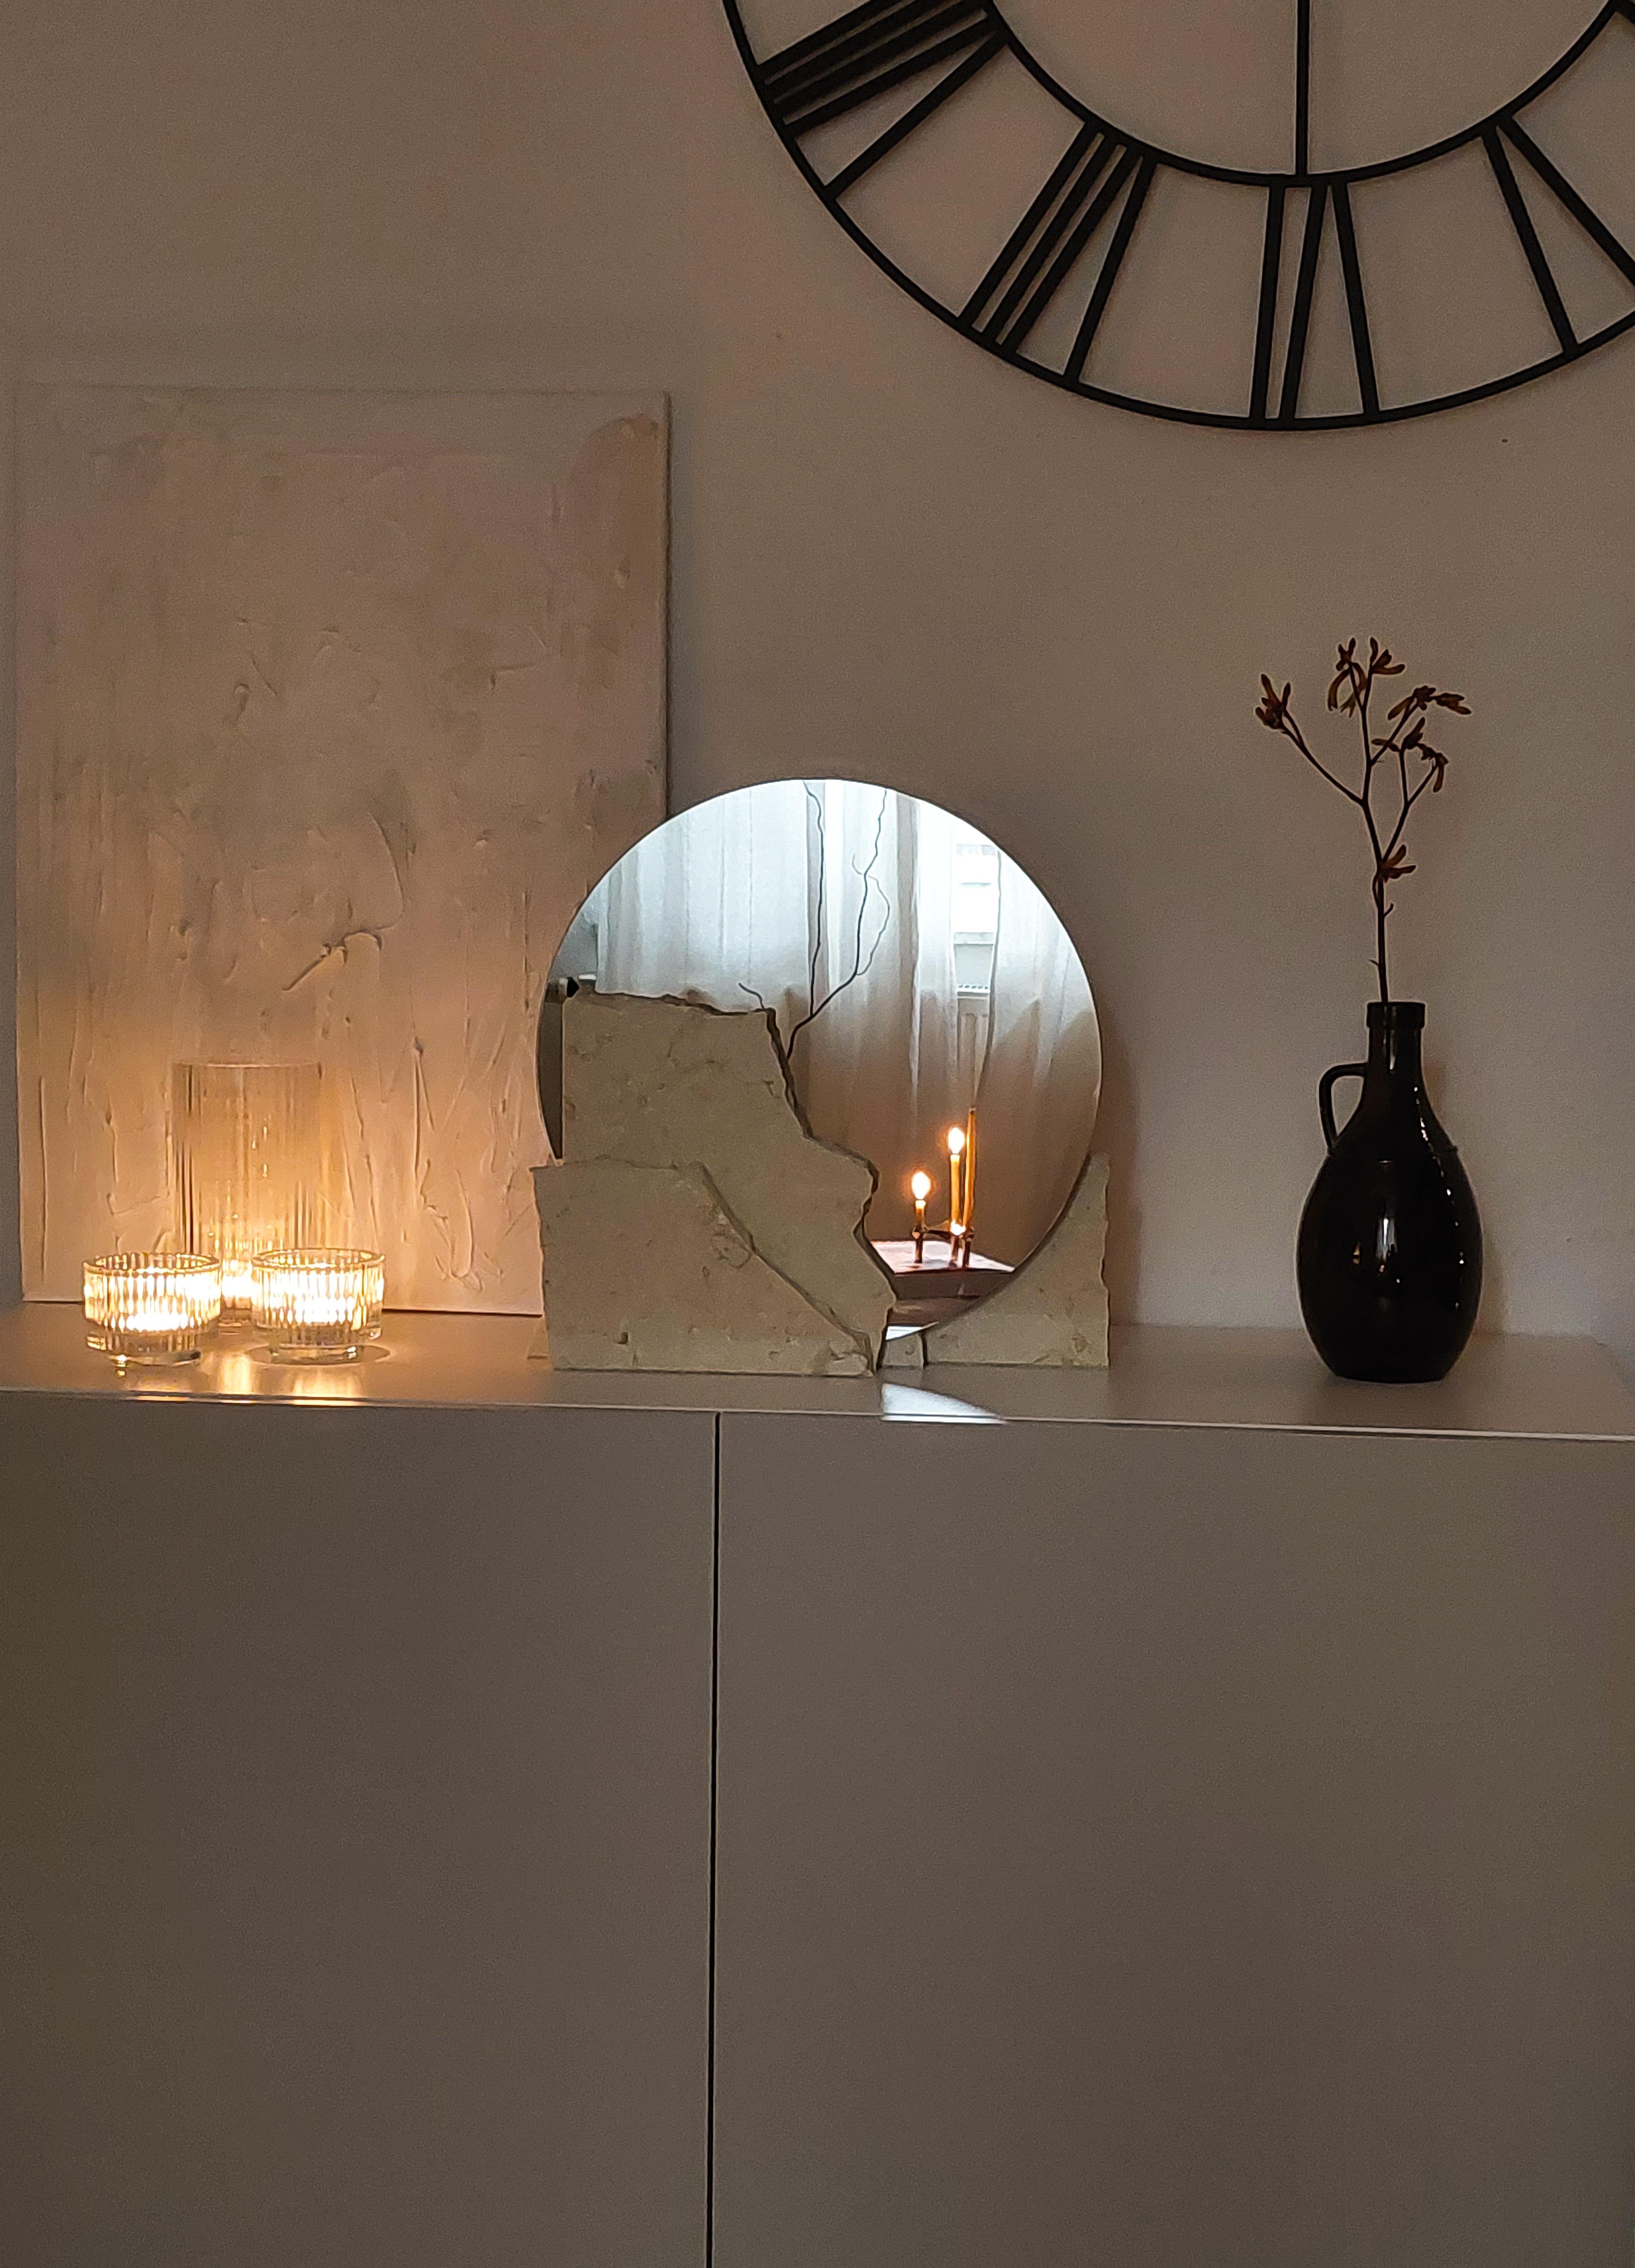 Marble Mirror DIY and LIGHT 🤎🤍🕯
So eine tolle hyggelige Zeit 
#heimelig #hygge 